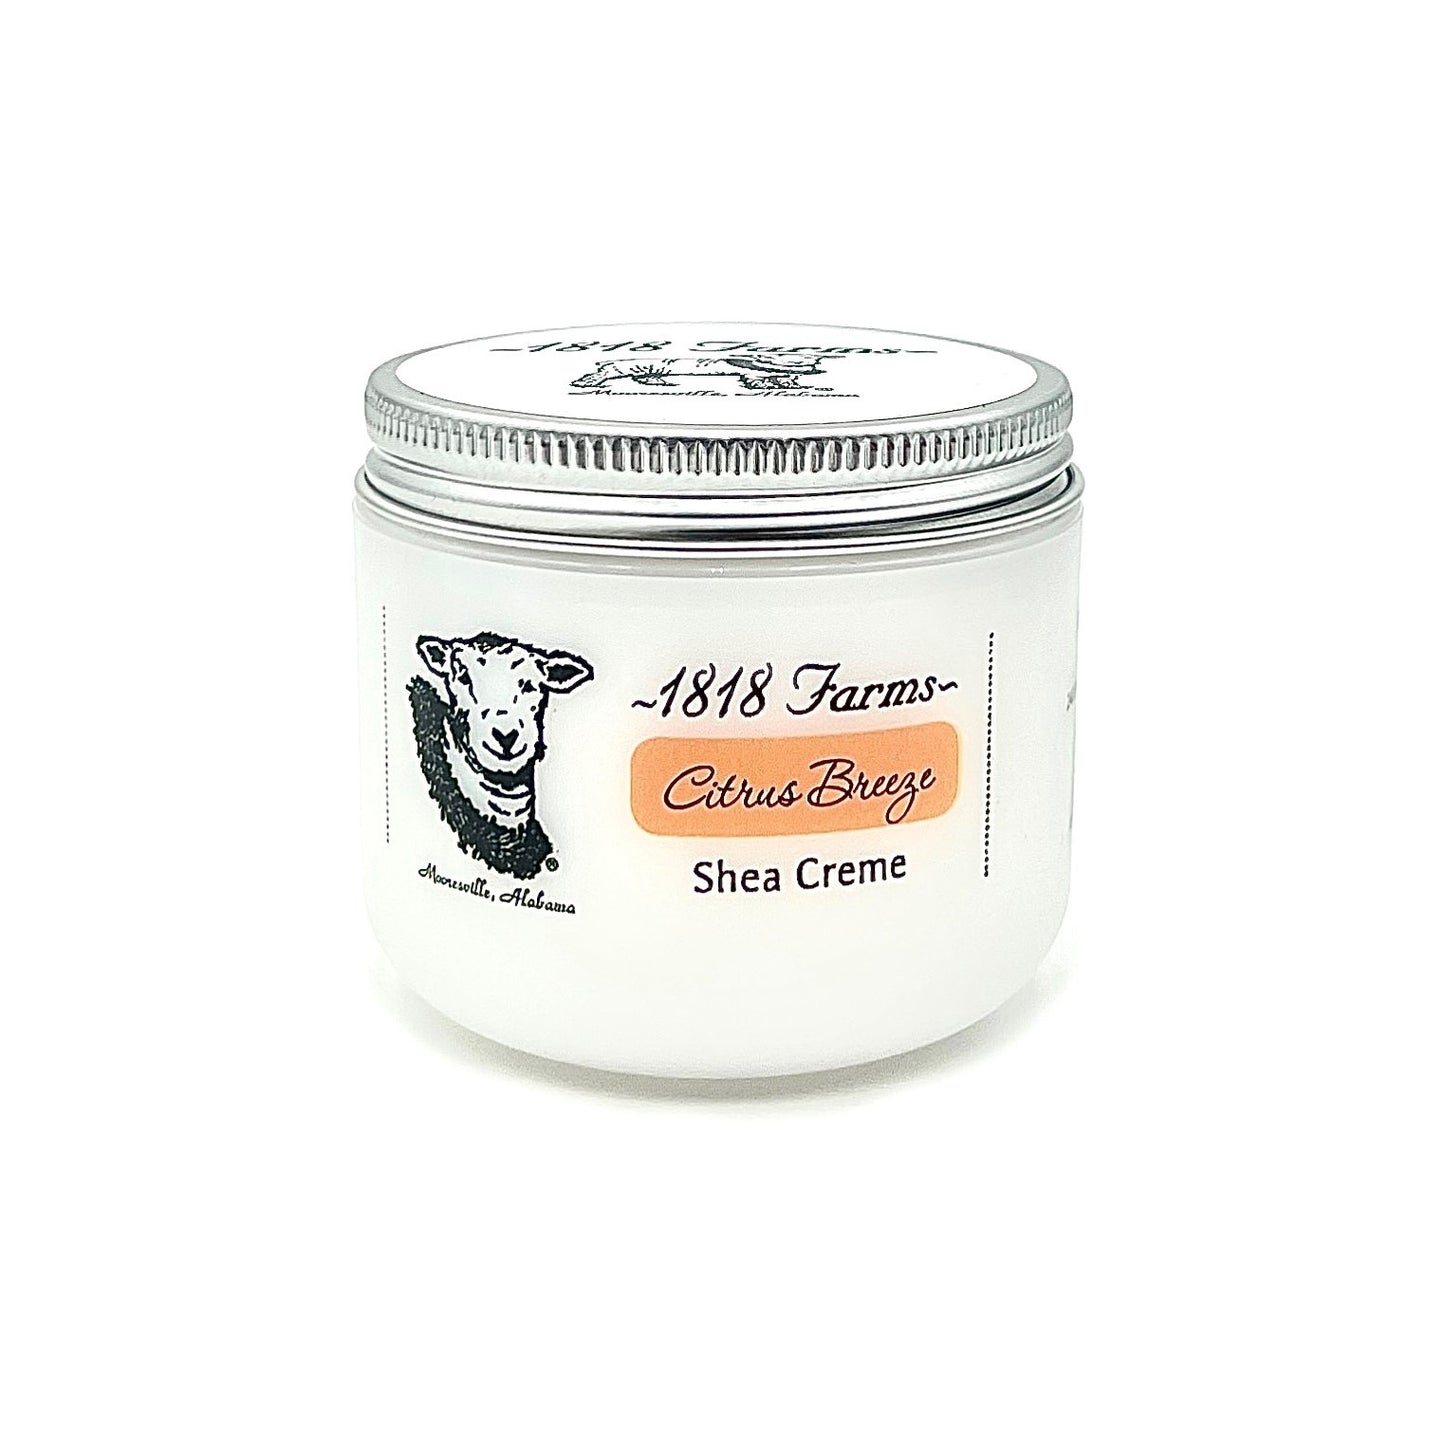 Shea Creme (4 fl oz) Shea Creme 1818 Farms Citrus Breeze  